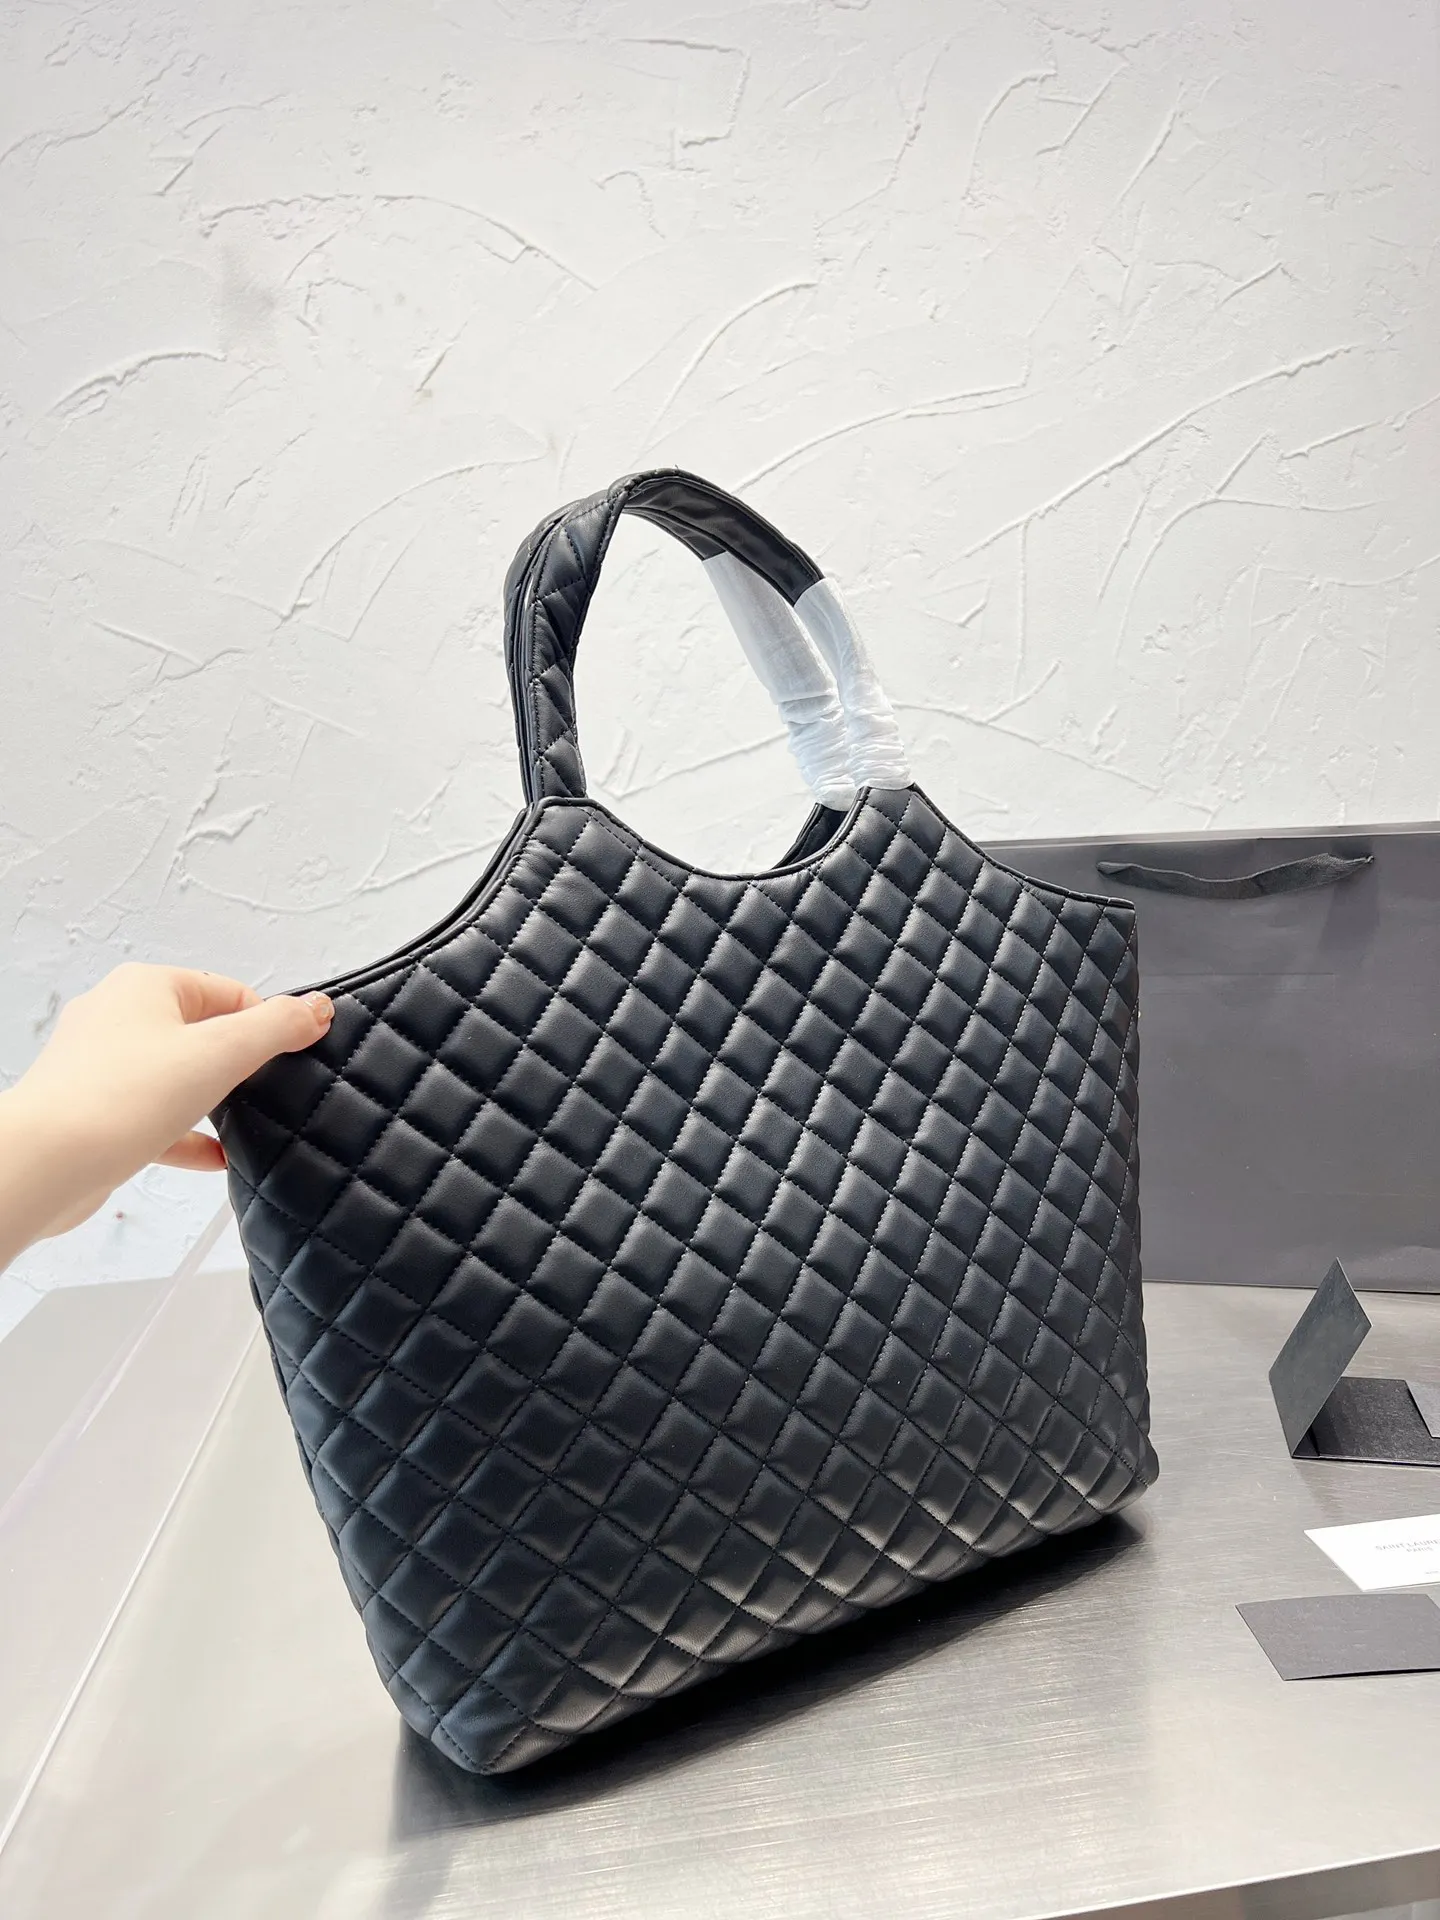 Kobiety Tote Fashion ICare Bag hobo torebka czarna gaby projektant maxi torebki plażowe projektanci torebki torby na zakupy torebki damskie luksusowe torebki